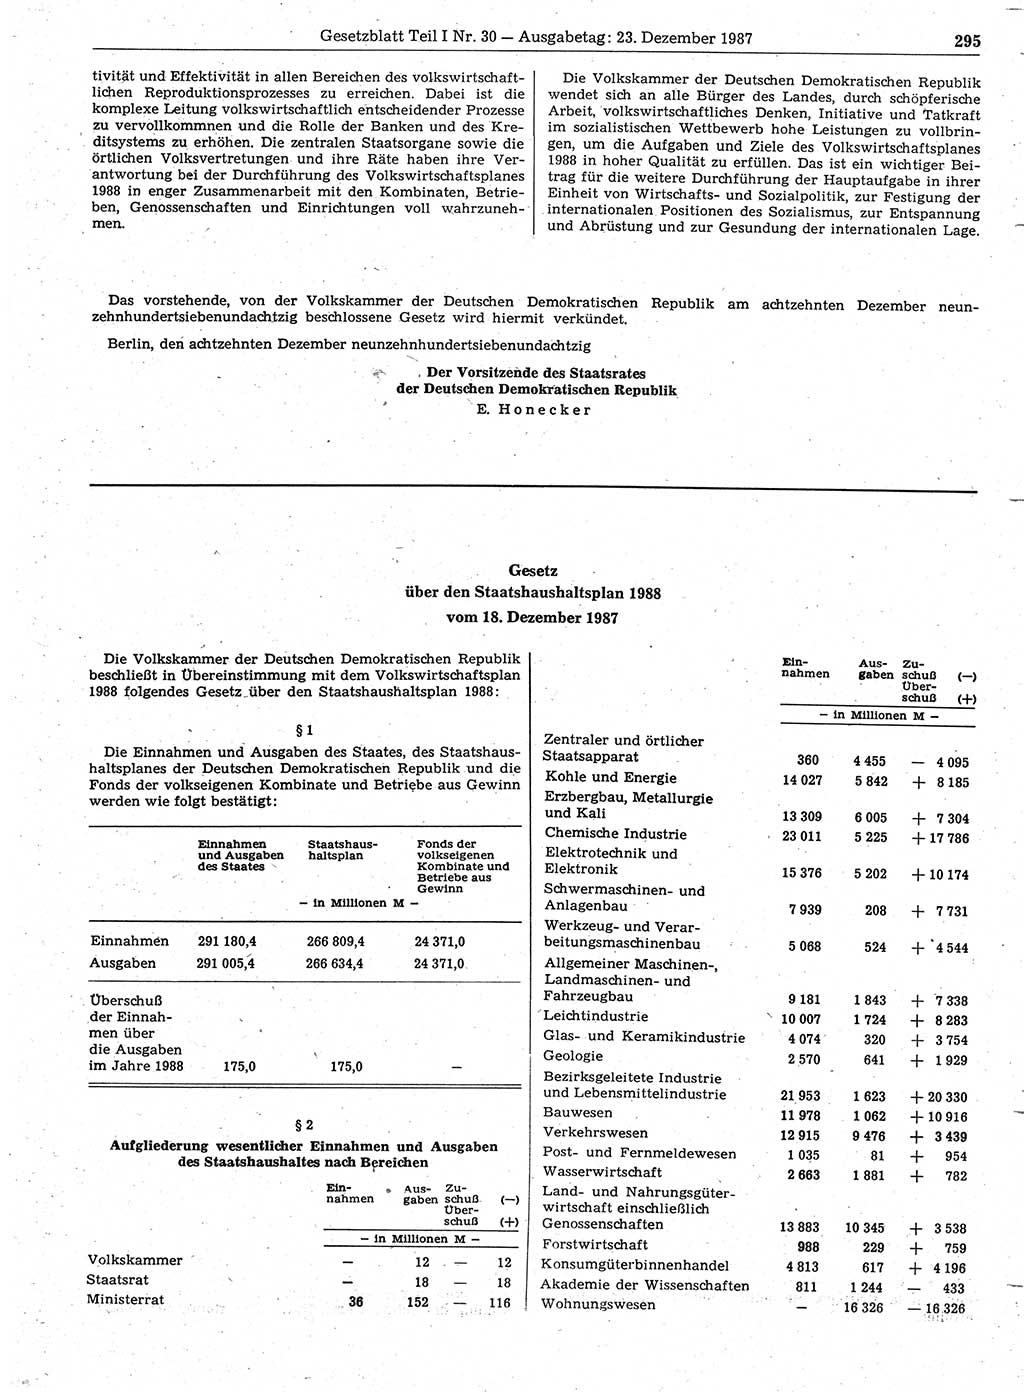 Gesetzblatt (GBl.) der Deutschen Demokratischen Republik (DDR) Teil Ⅰ 1987, Seite 295 (GBl. DDR Ⅰ 1987, S. 295)